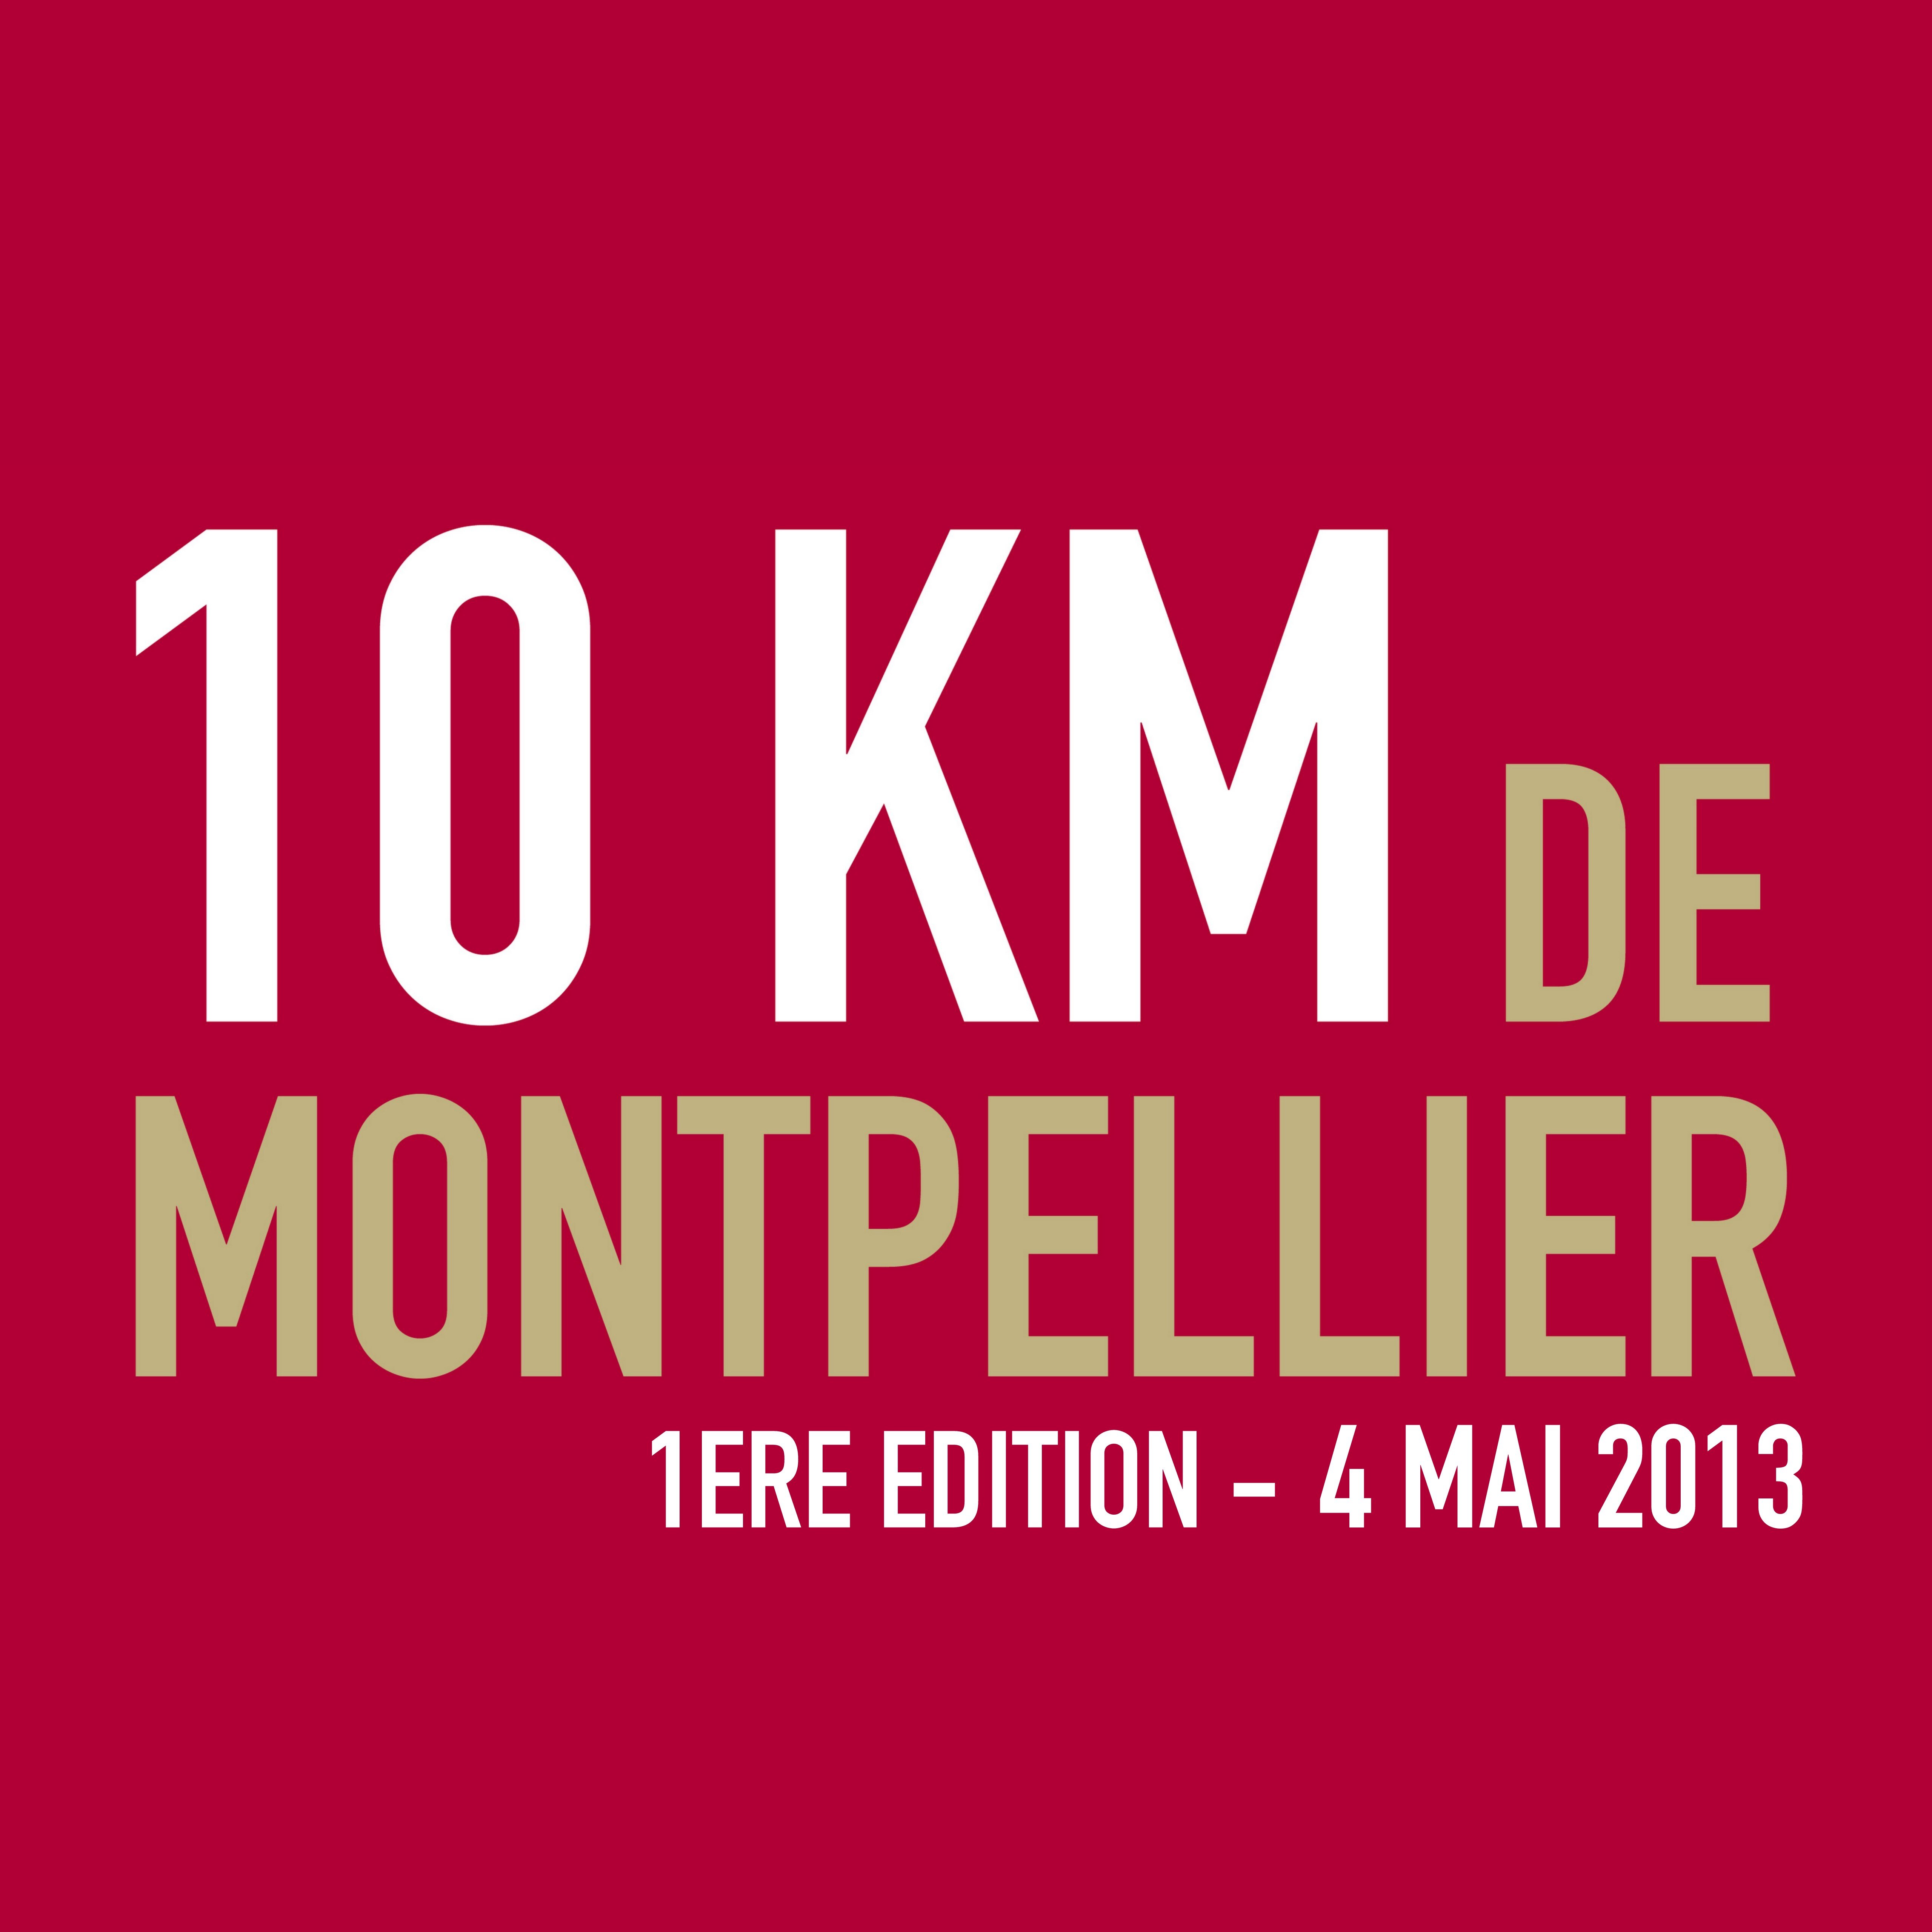 Rejoignez nous pour participer au 10 km de Montpellier le 4 mai 2014 ! #10kMTP
http://t.co/d838Z084eD